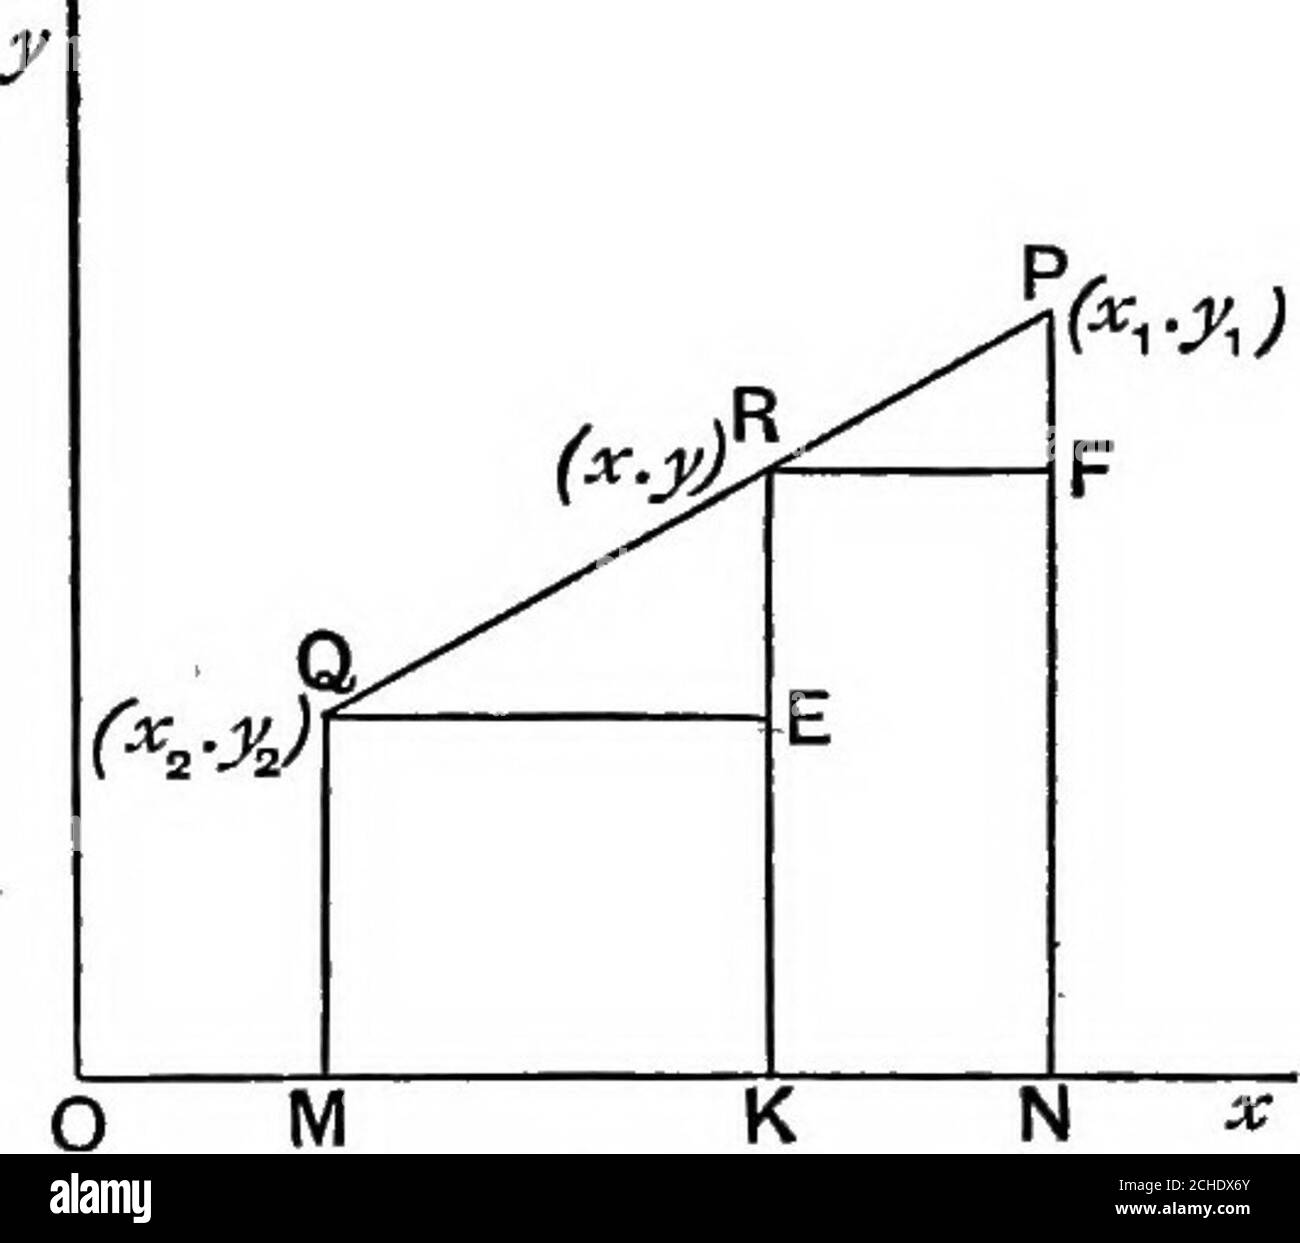 . Géométrie algébrique; un nouveau traité sur les sections coniques analytiques . K PIQ. 5. (^1 ■:&gt;!,) F y-- 2 ART. 6.] COORDONNÉES RECTANGULAIRES. De la même manière QE = FR, c'est-à-dire OK - DM = ON-OK; 2x = x^ + X2, noter que R est le centre de gravité des particules égales ATP et Q. 6. Pour trouver les coordonnées du point de division dans un rapport donné theline joignant deux points donnés.soit P(«j, ^j), Q,{x^, y^ soient les points donnés, et que le point R divise PQ de sorte que ;r— = — ■ QR a^ soit {x, y) les coordonnées de R. il est nécessaire de trouver x et y en termes de coordonnées OFP et Q et a^, a^. Tracer les coordonnées P Banque D'Images